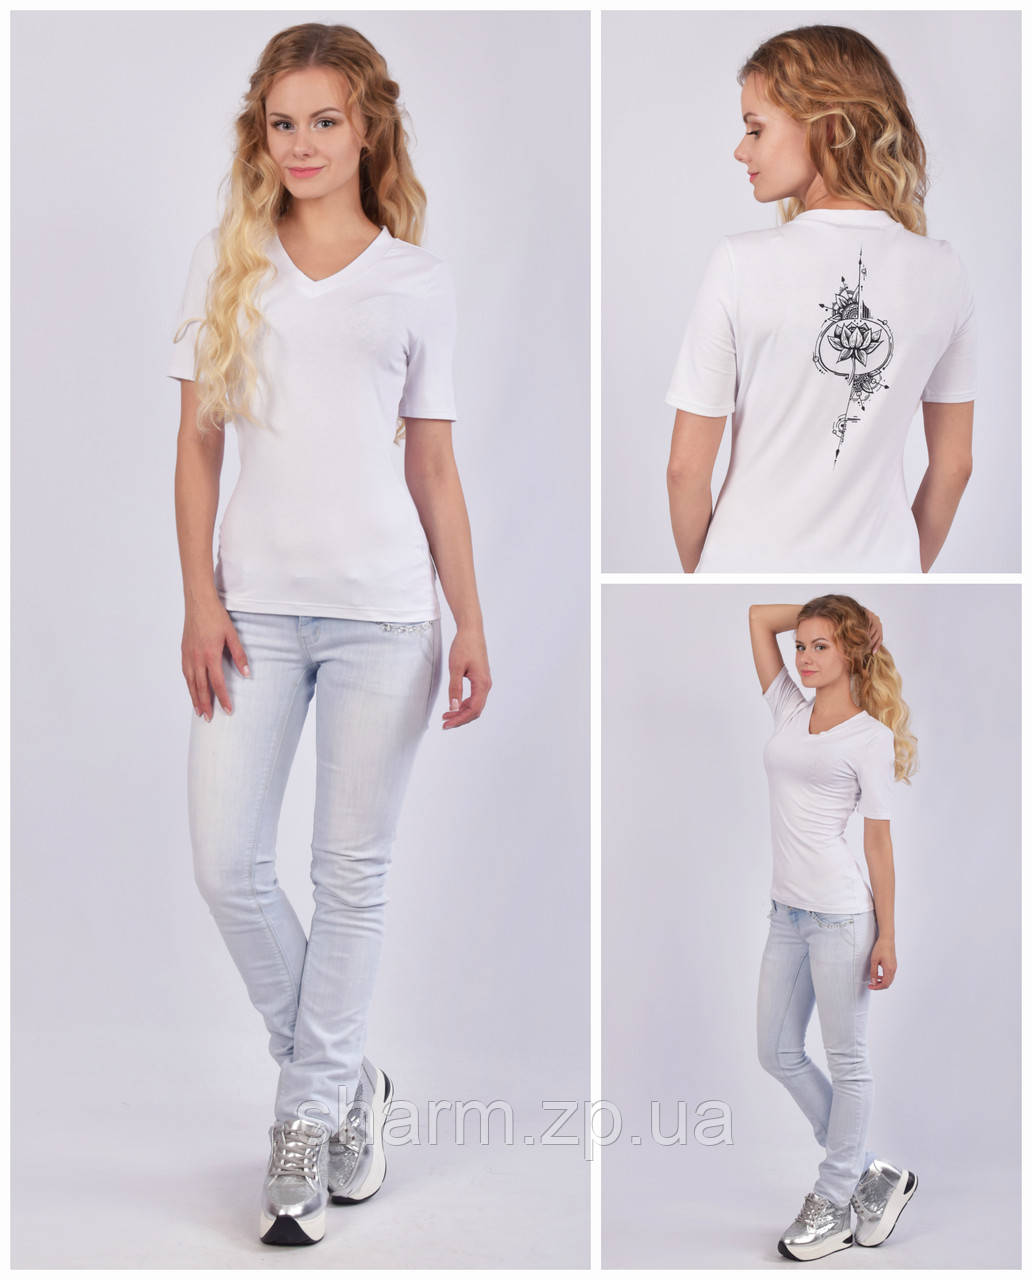 Жіноча футболка з V - подібним вирізом (мисик), авторський принт - лотос, біла